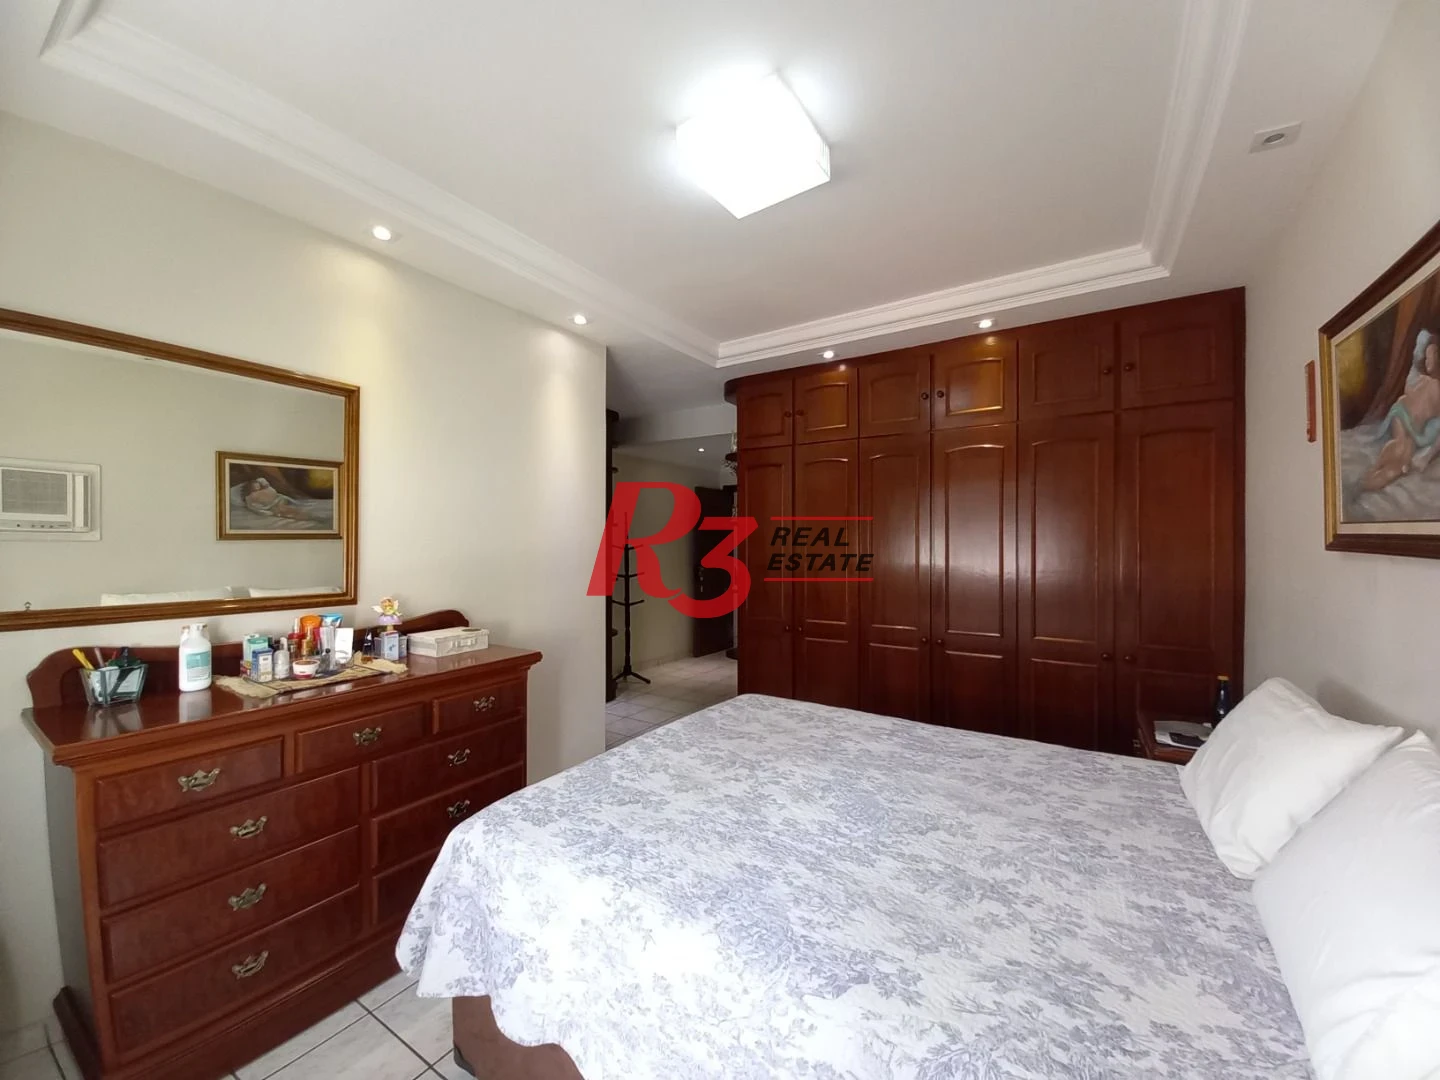 Apartamento á venda 3 quartos 2 Vgs Demarcadas Boqueirão Santos.